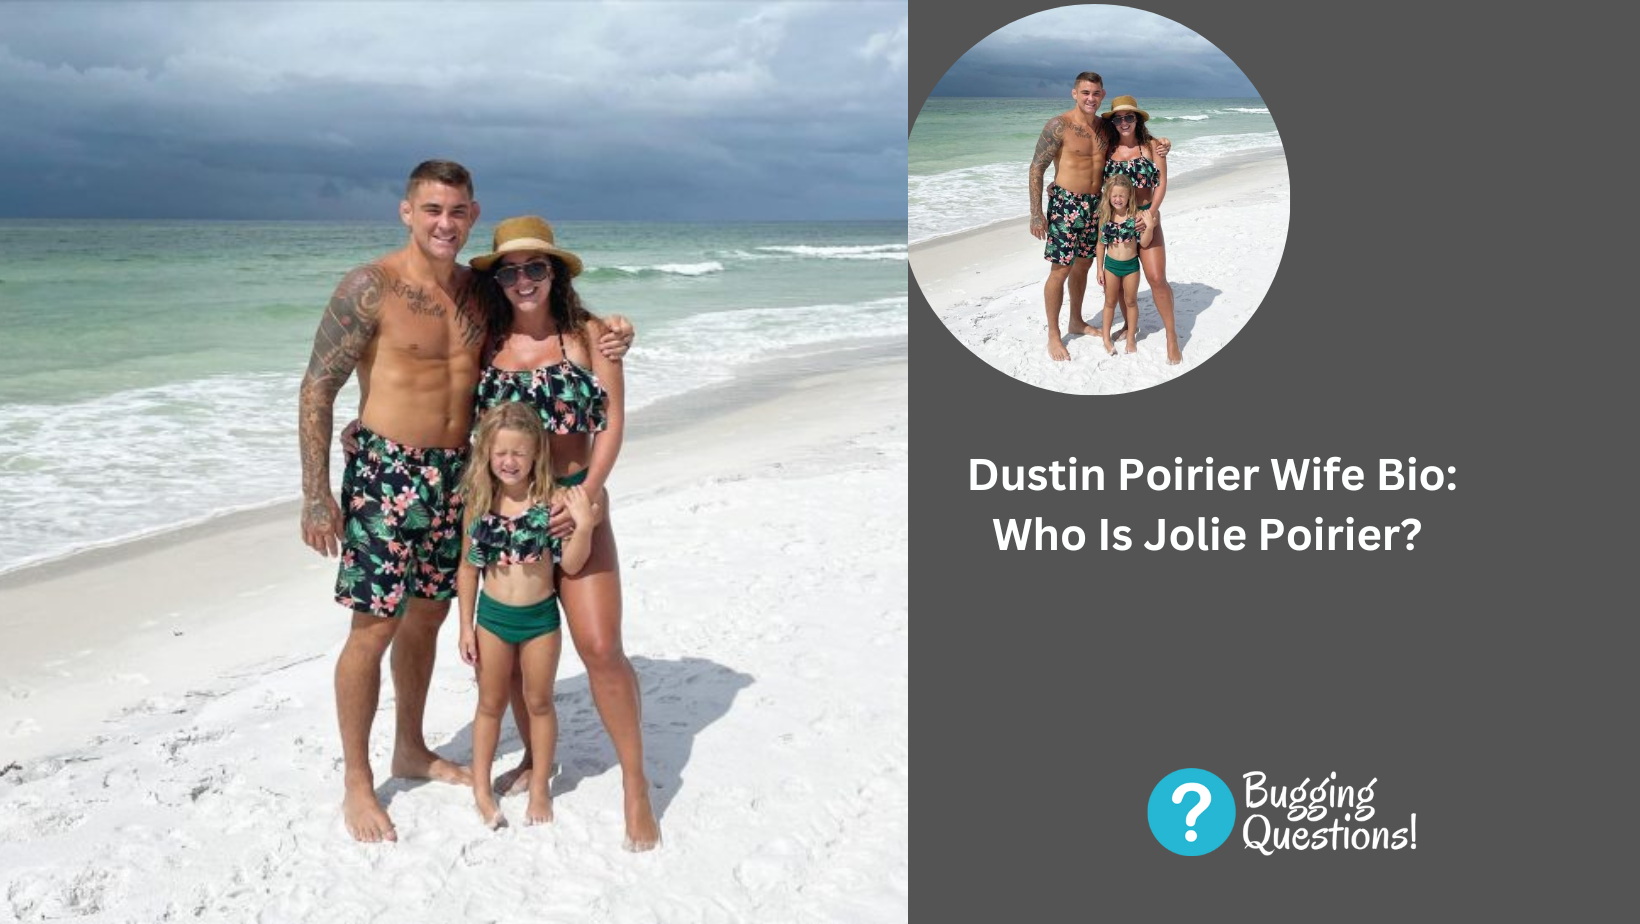 Dustin Poirier Wife Bio: Who Is Jolie Poirier?